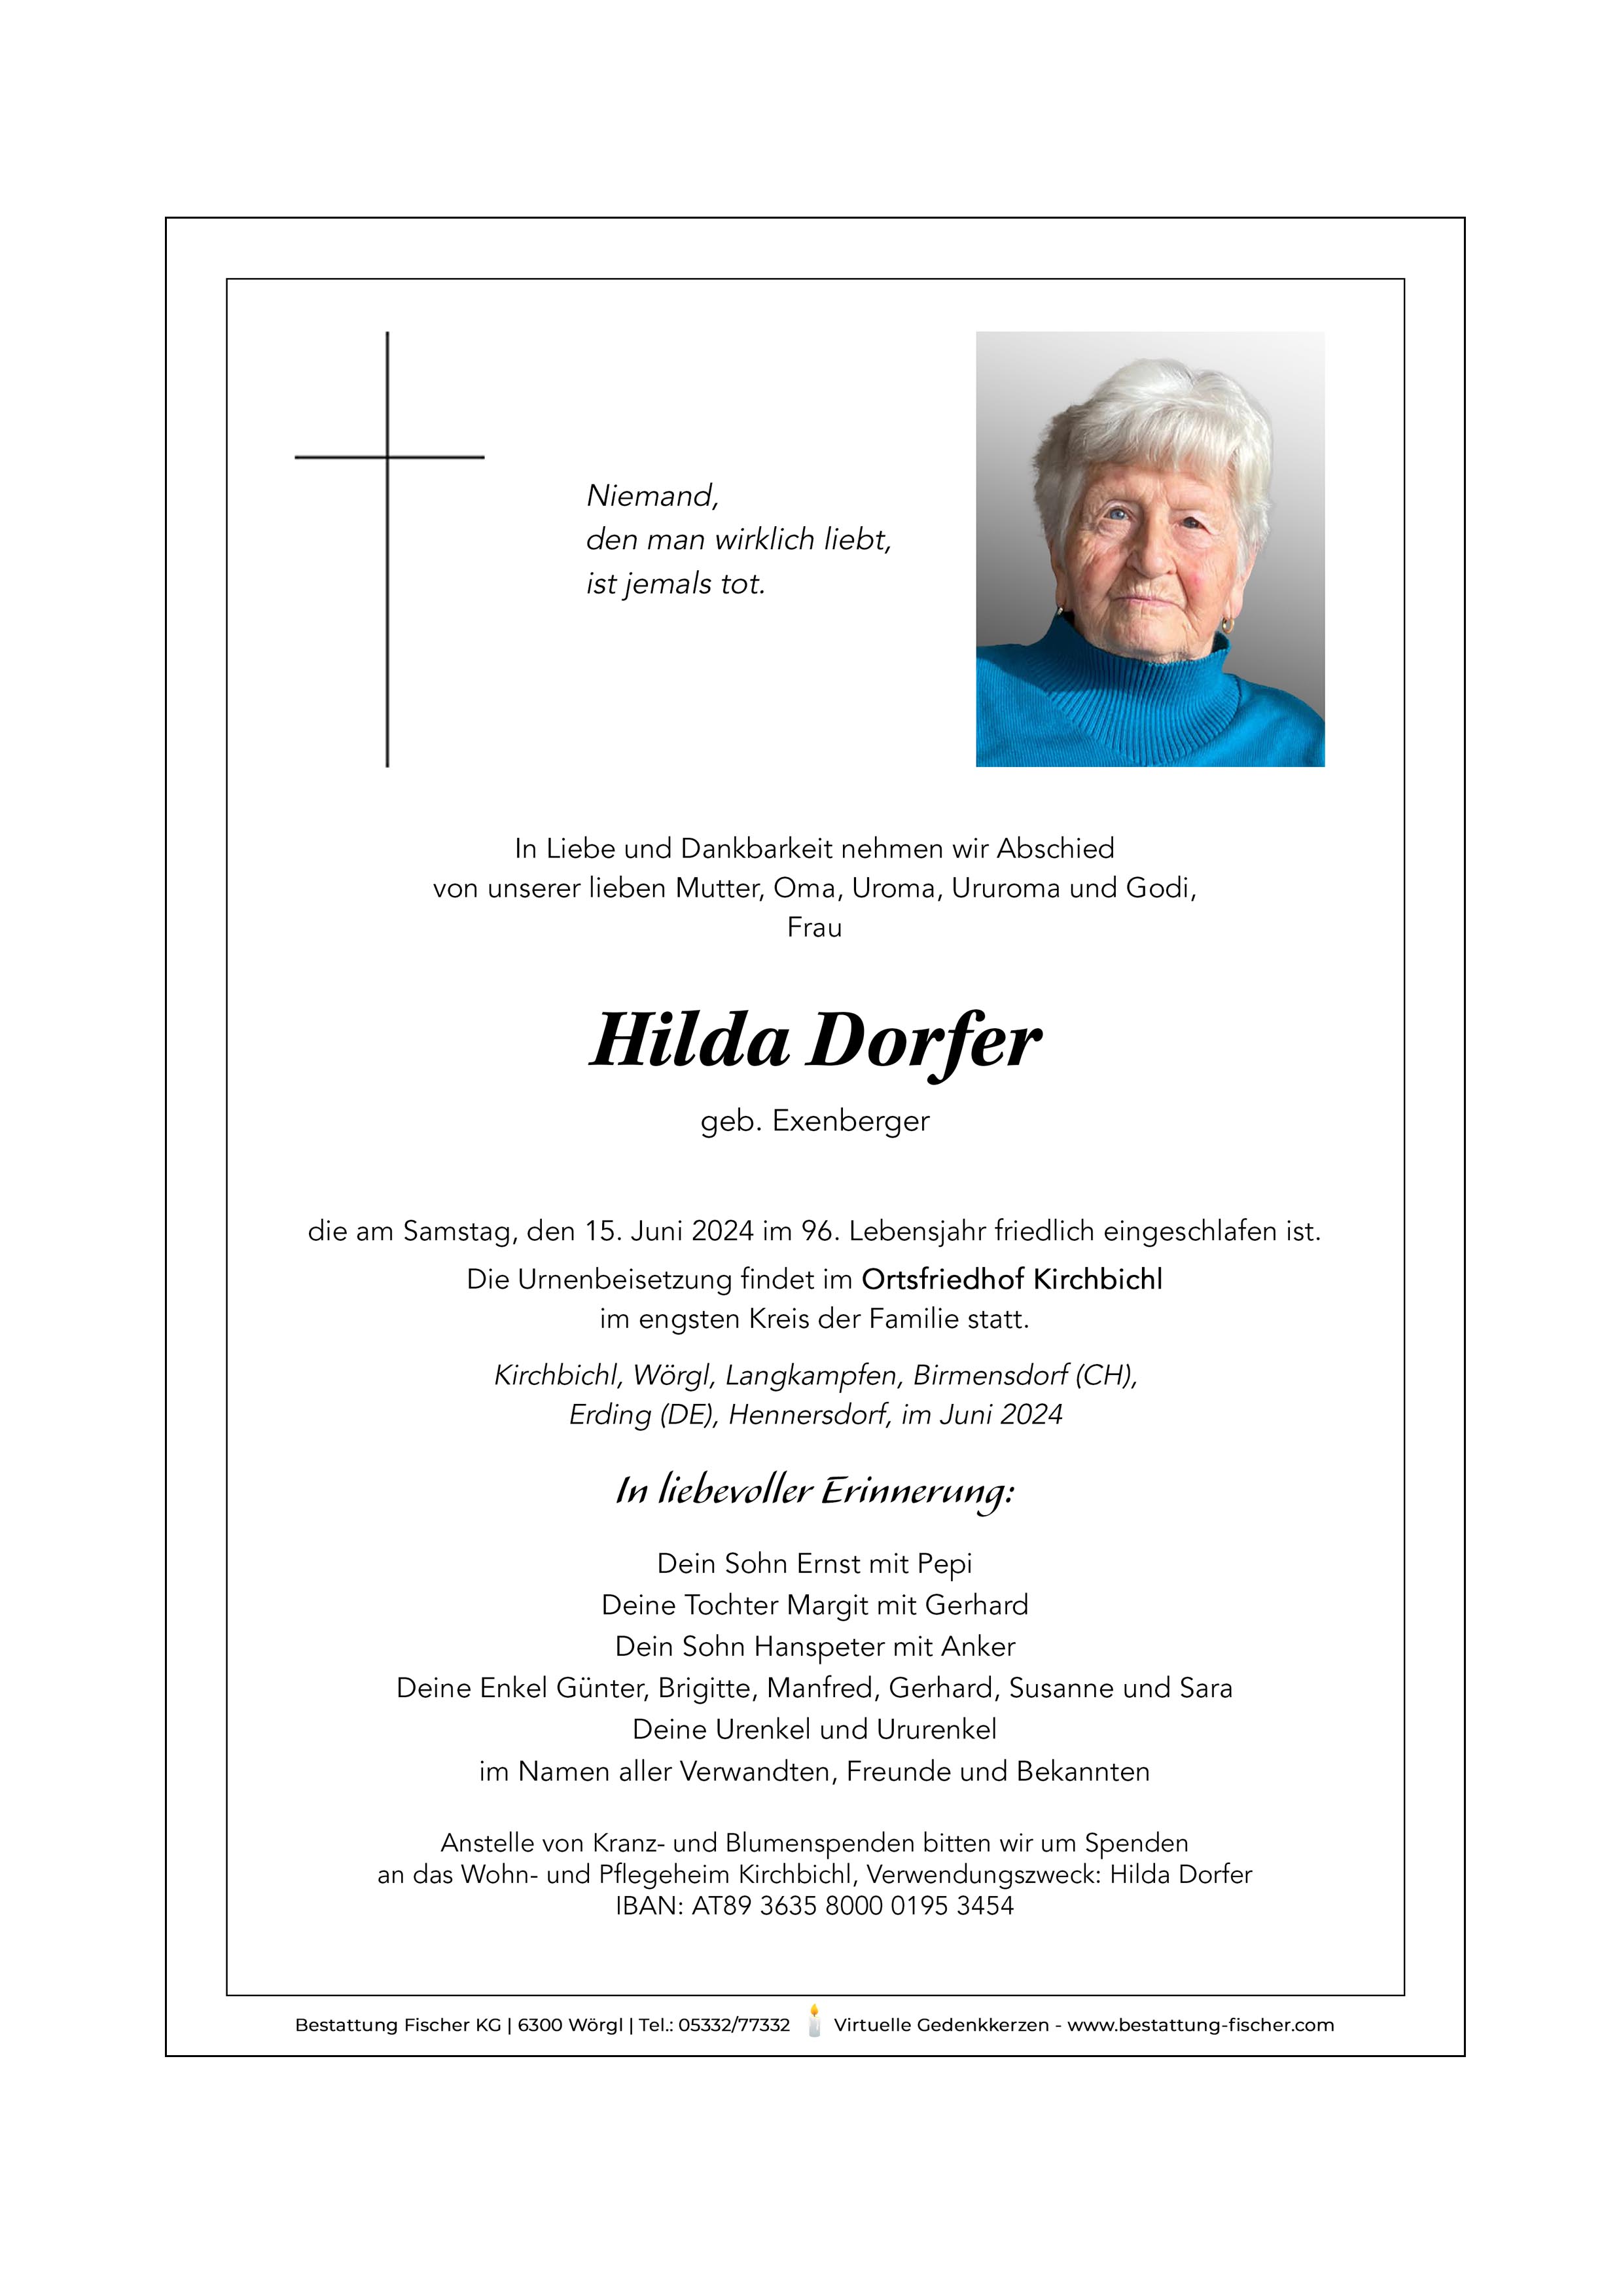 Hilda Dorfer